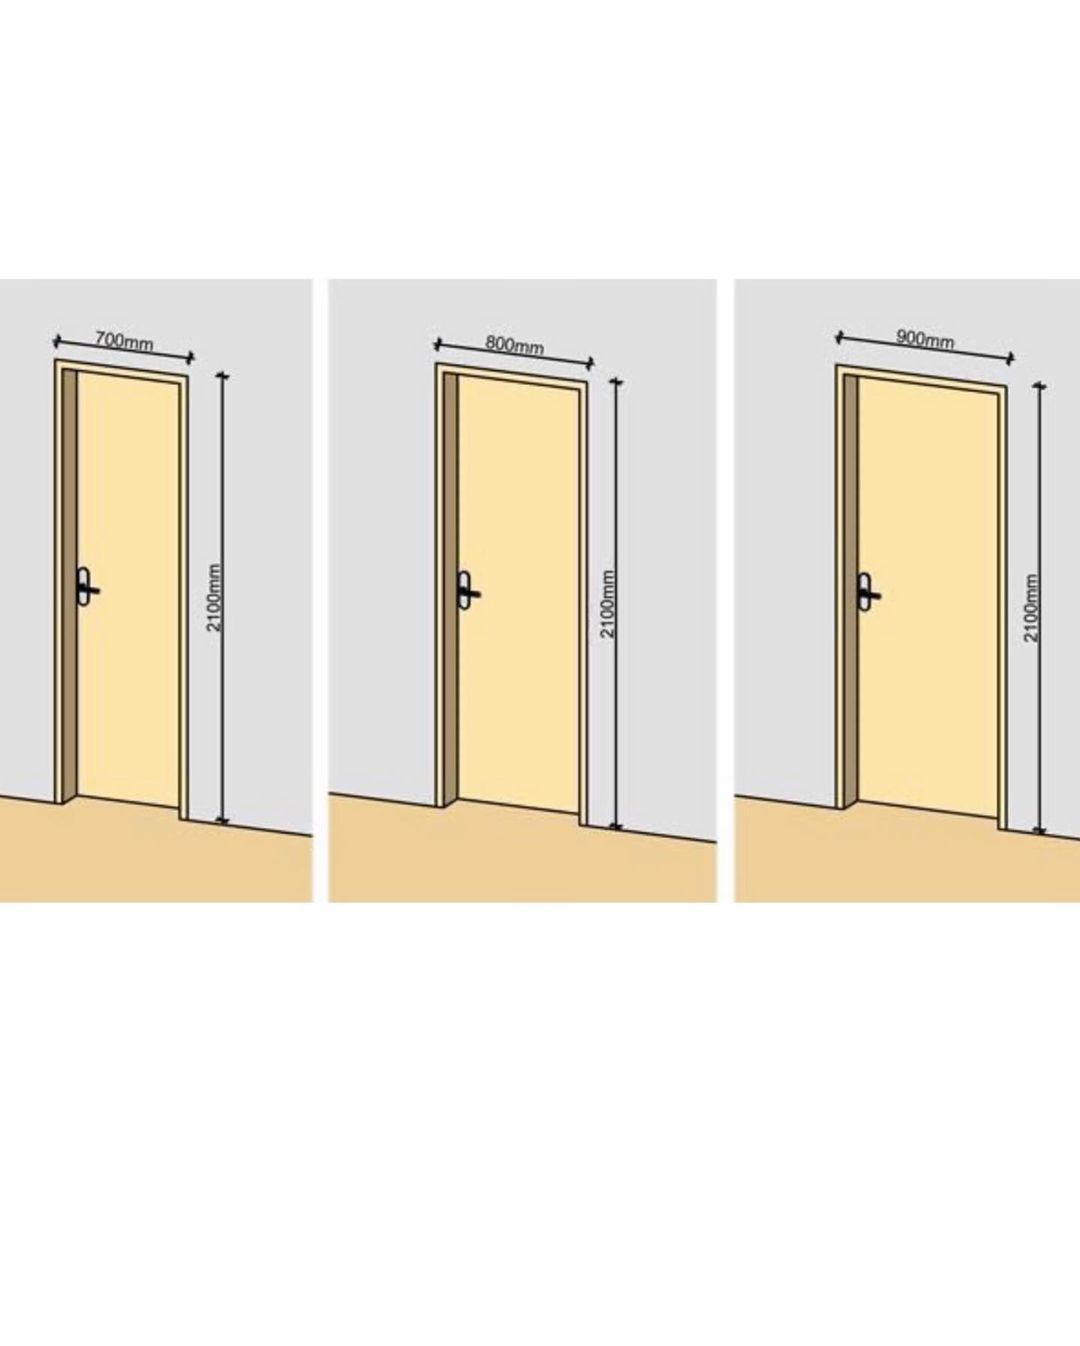 Размеры дверей ванна туалет. Высота проема межкомнатной двери стандарт. Стандартный размер полотна межкомнатной двери. Ширина дверного проема межкомнатной двери стандарт. Высота дверного проема межкомнатной двери стандарт.